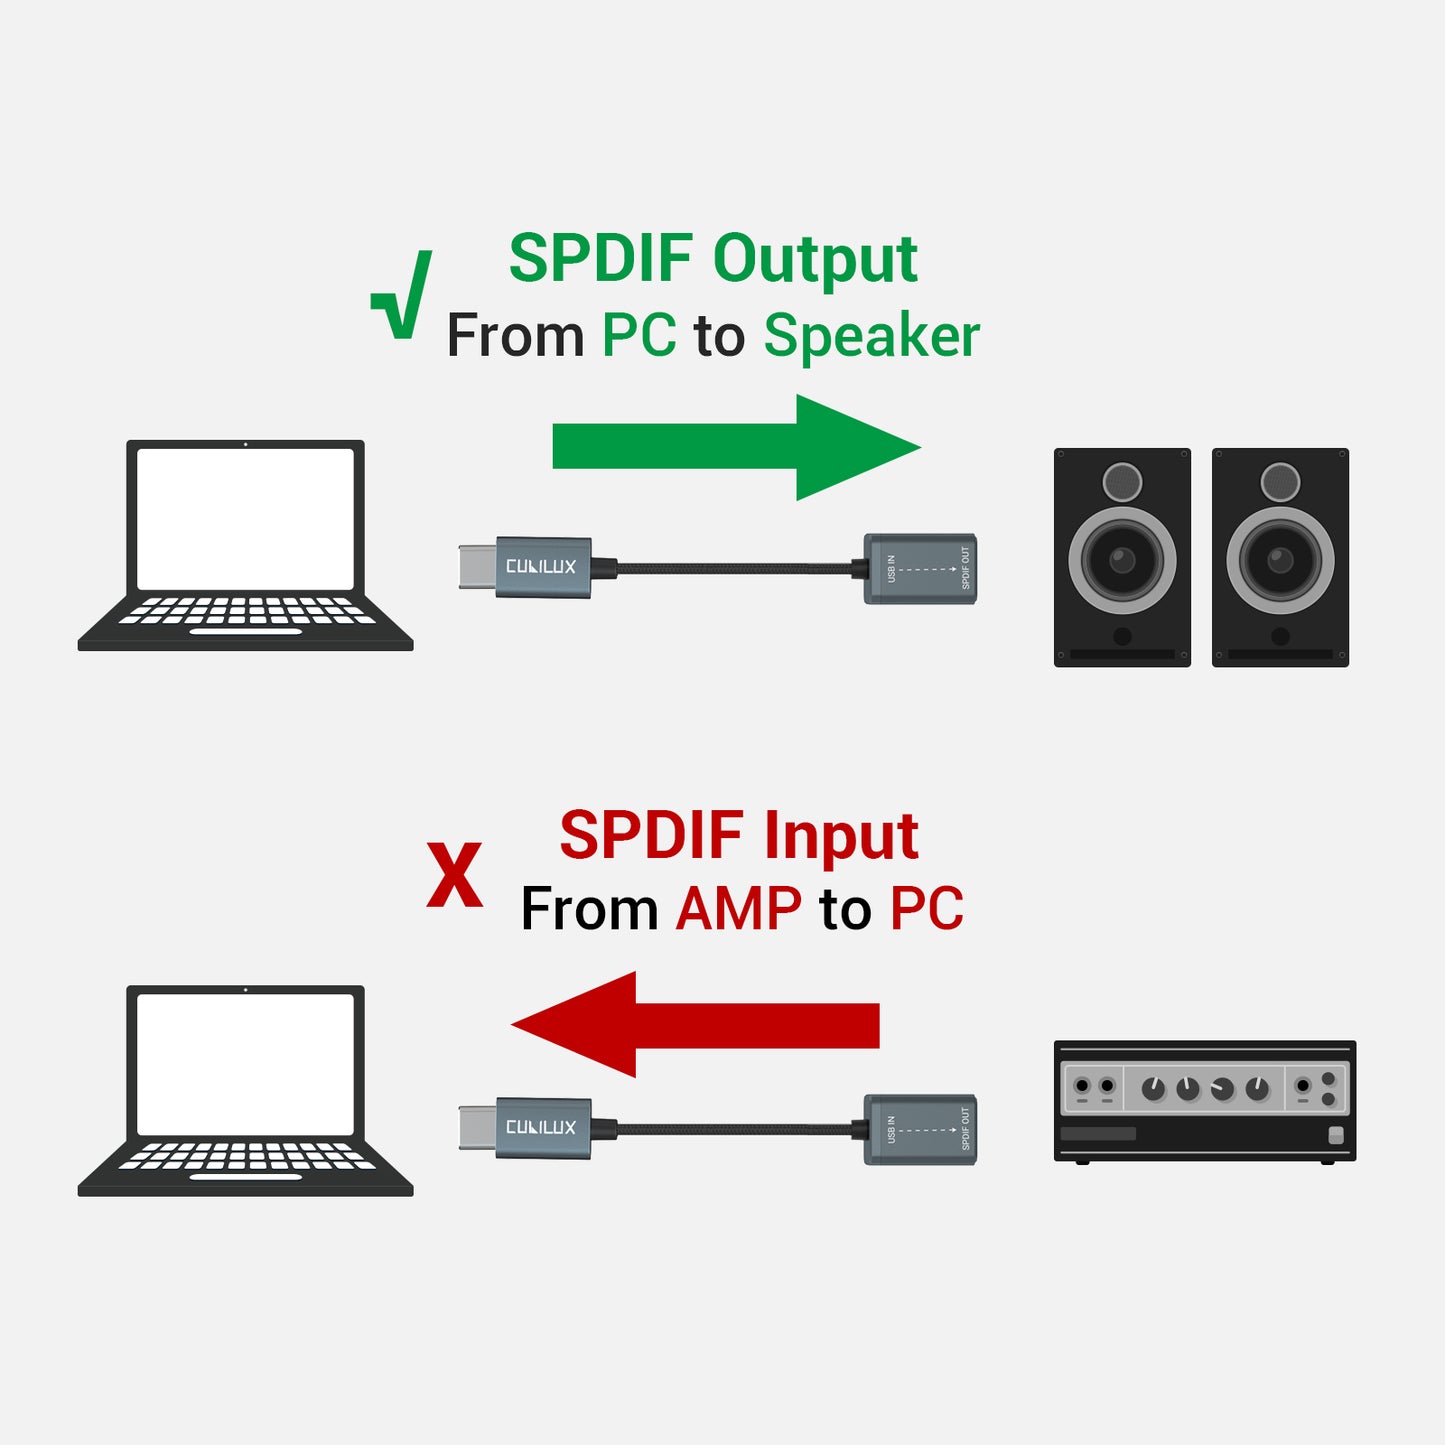 USB C SPDIF Adapter-Gray